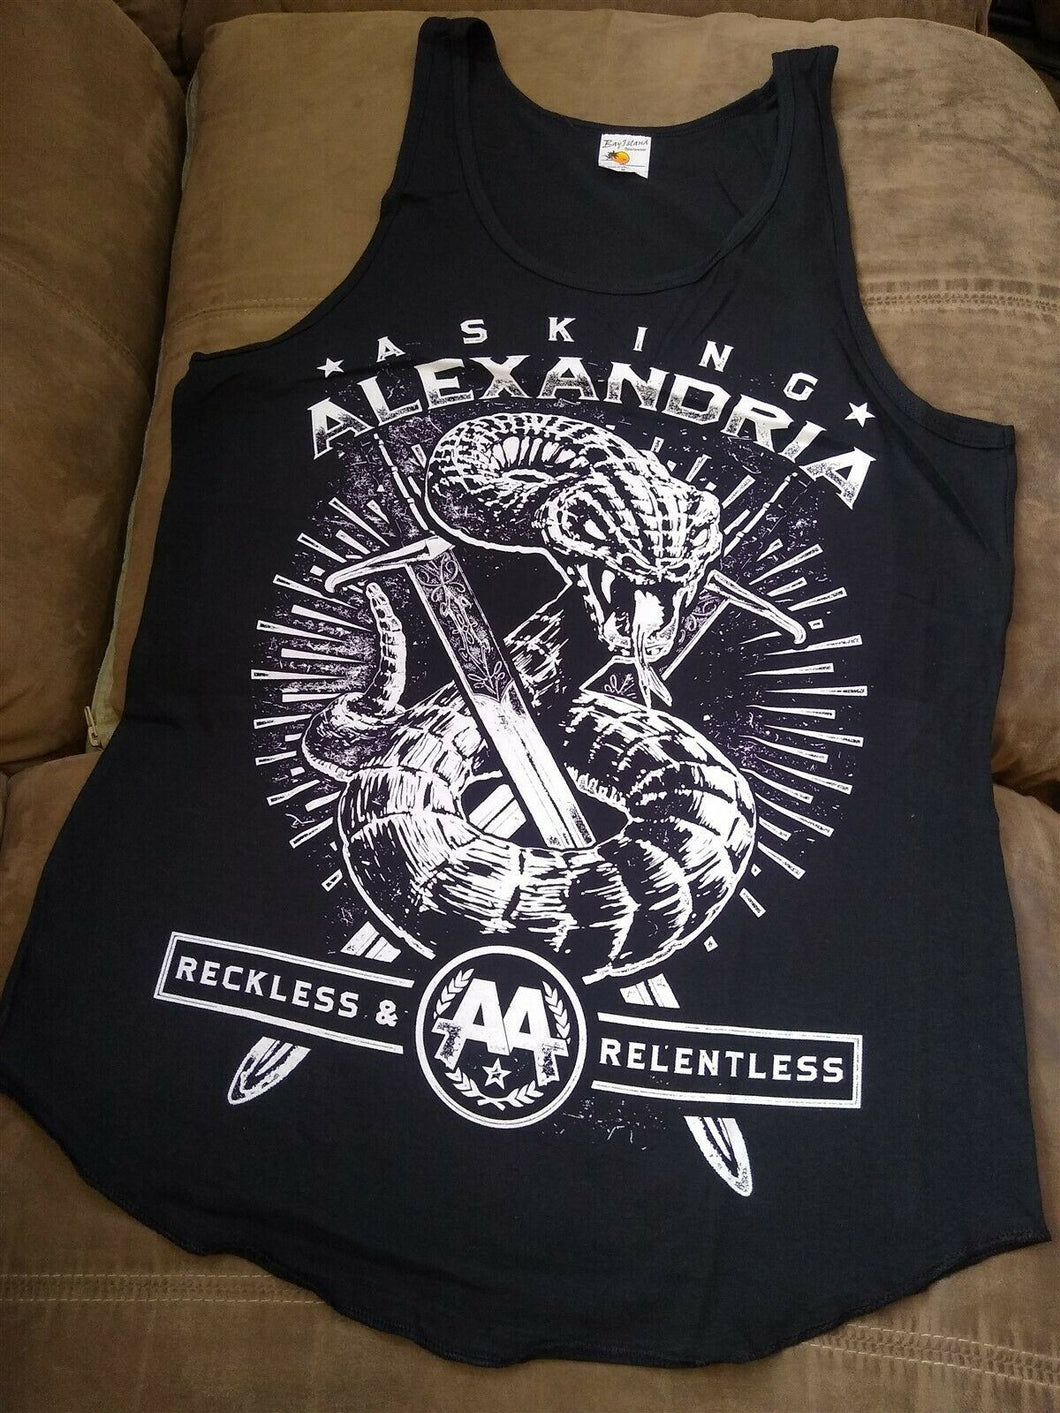 ASKING ALEXANDRIA- Reckless & Relentless Tank Top Shirt ~Never Worn~ M/XL